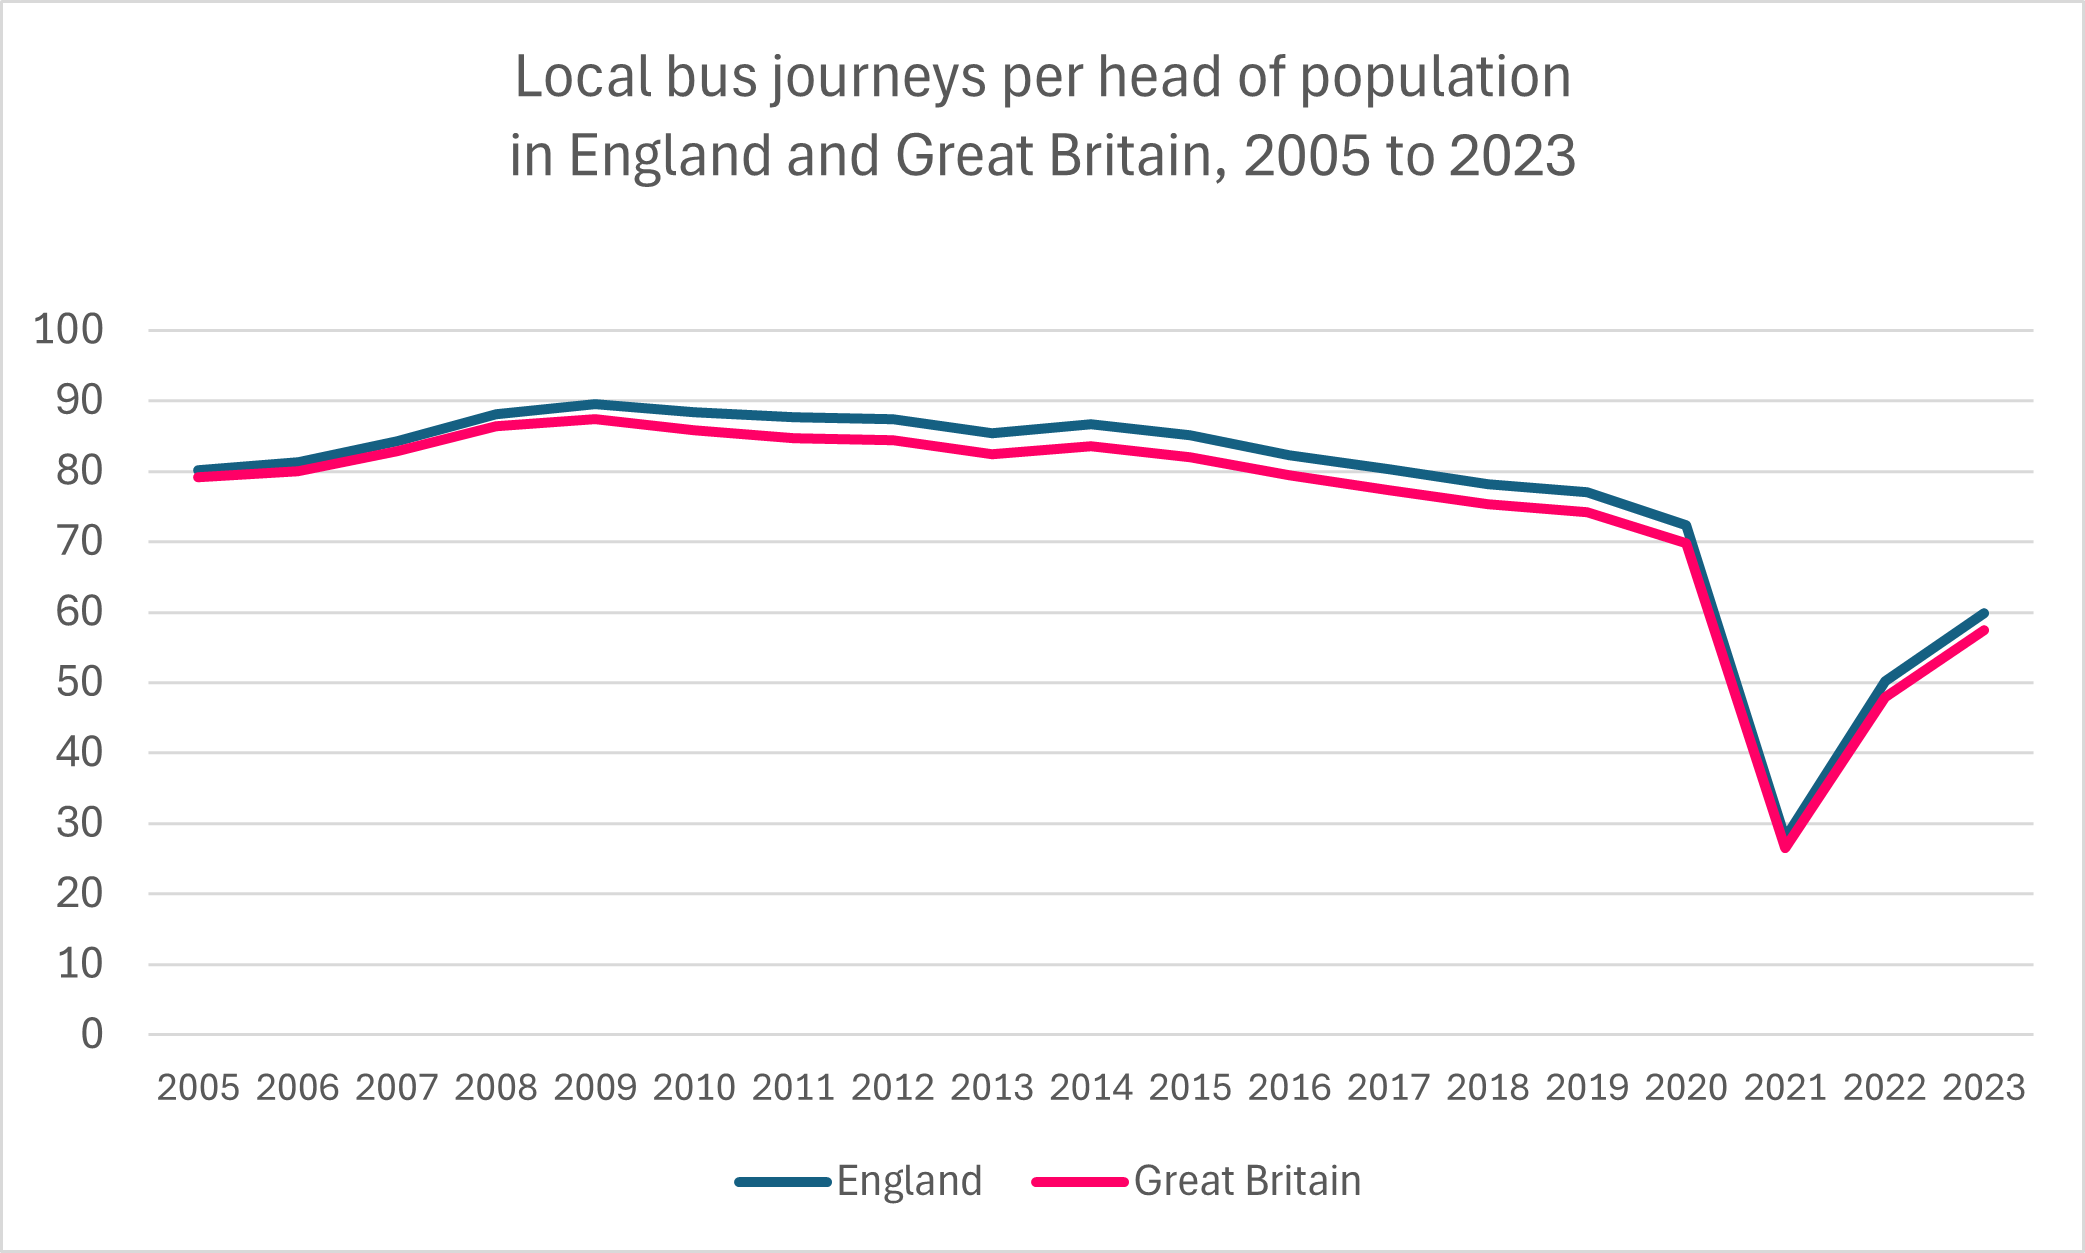 Bus journeys per head 2005 - 2023